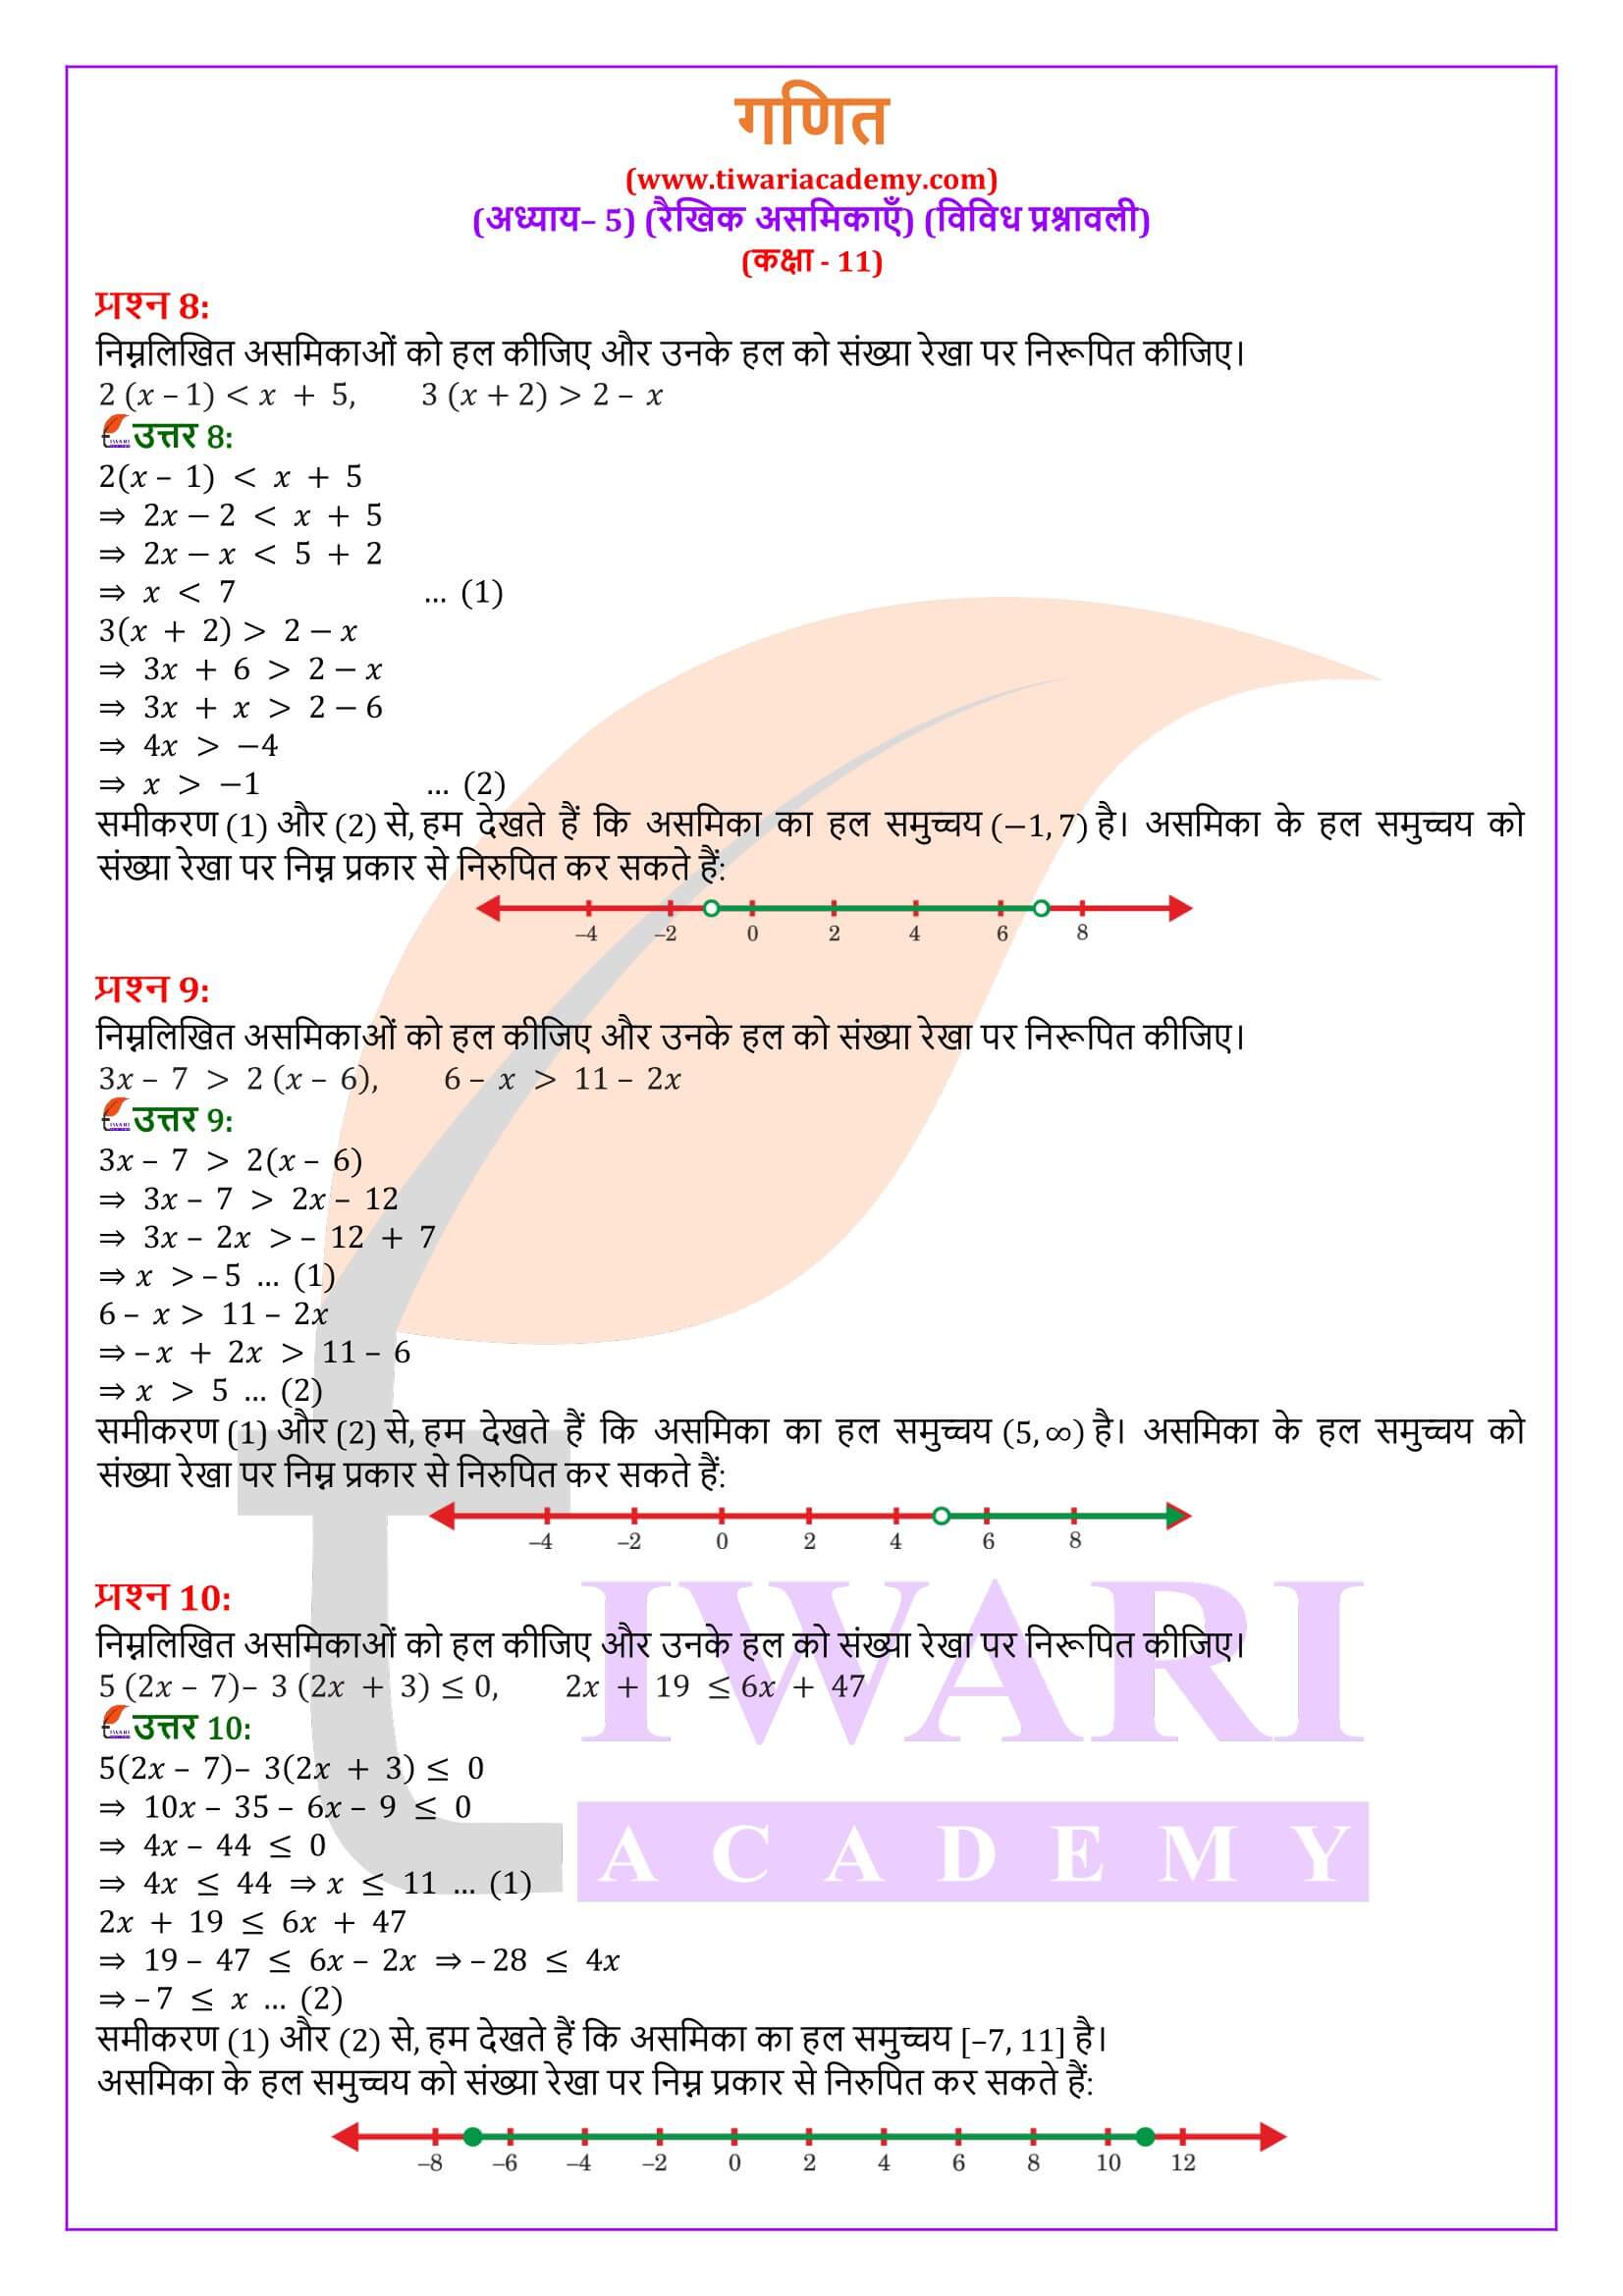 कक्षा 11 गणित अध्याय 5 विविध प्रश्नावली के हल हिंदी में